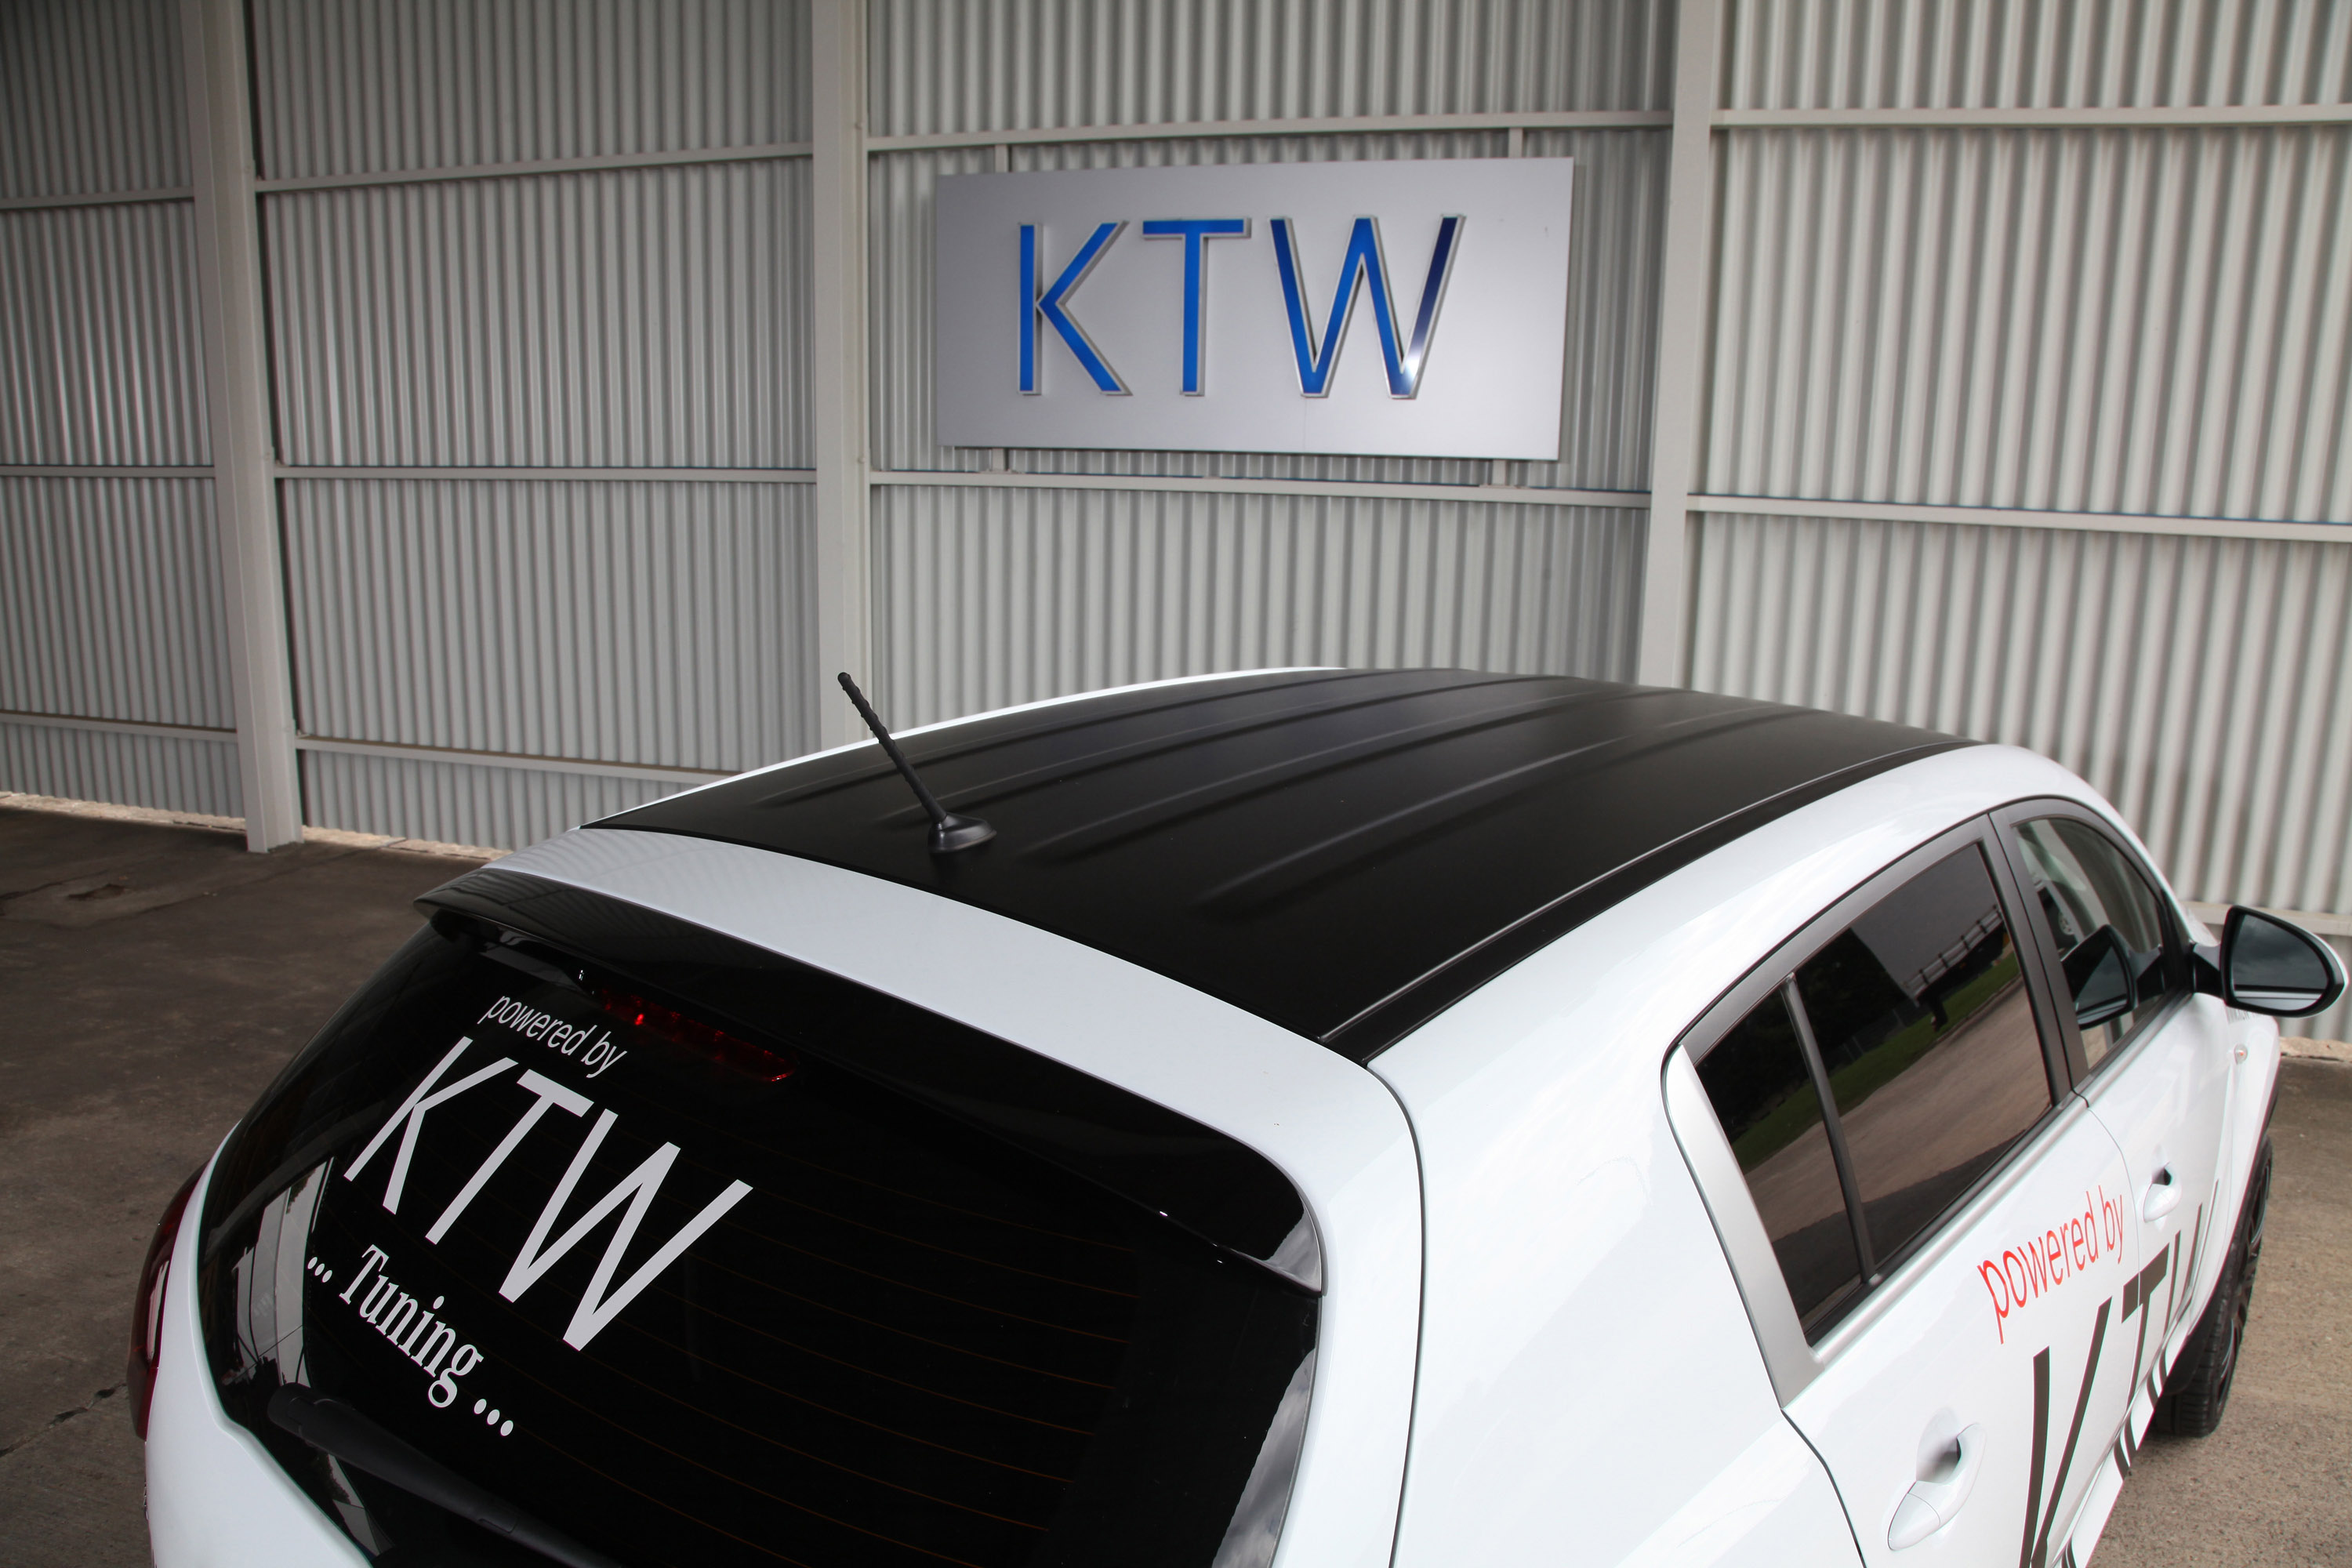 KTW Tuning Kia Sportage Edition Desperados